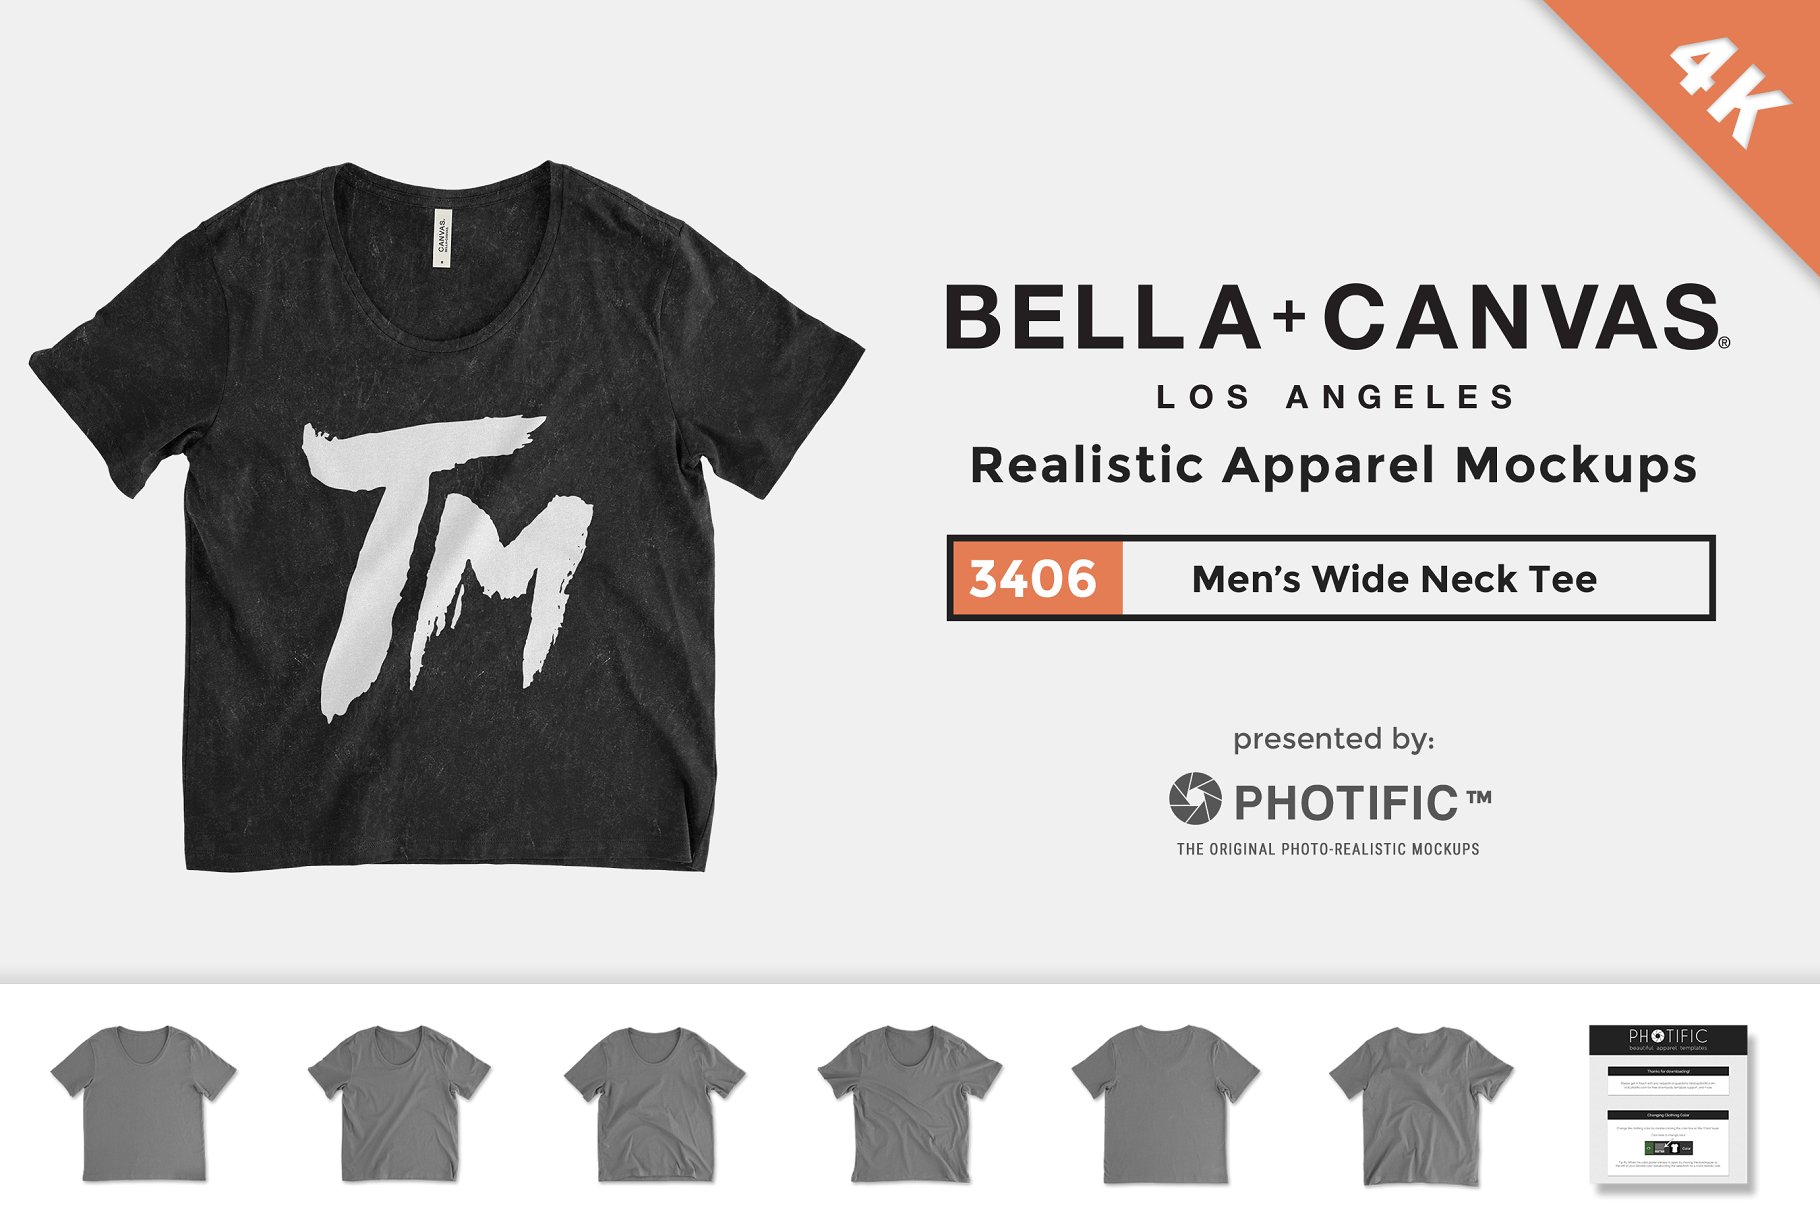 短款女性T恤服装样机模板 Bella Canvas 3406 Wide Neck Tee插图